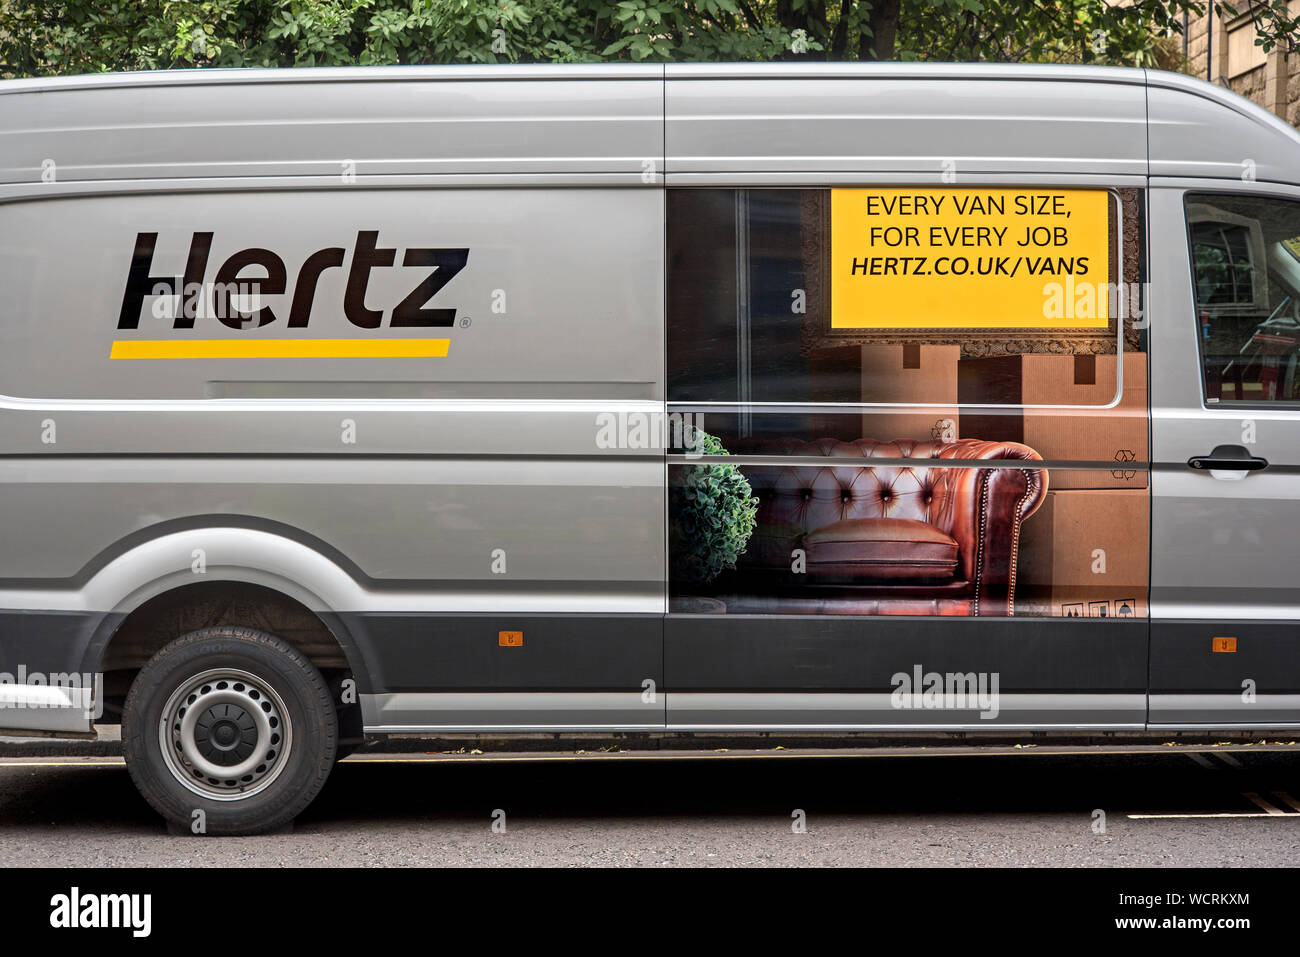 hertz rent a van